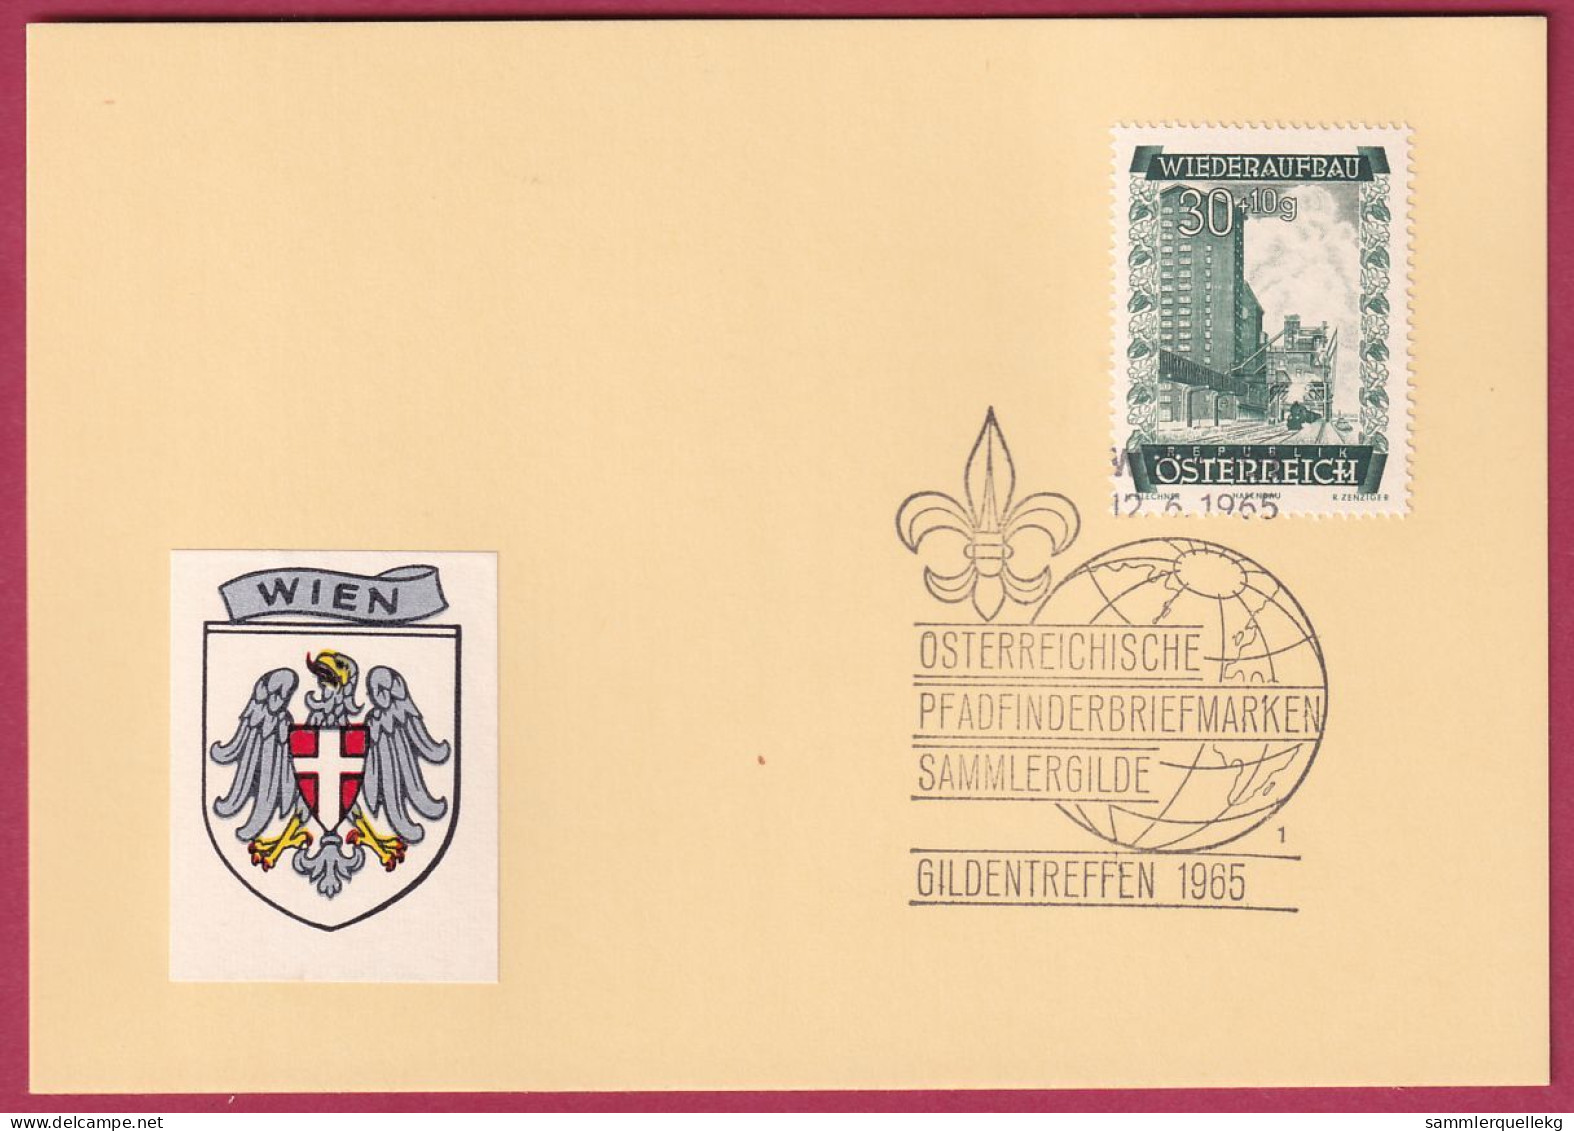 Österreich MNr. 860 Sonderstempel 12. 6. 1965 Österreich Pfadfinderbriefmarken Sammlergilde 1965 - Briefe U. Dokumente